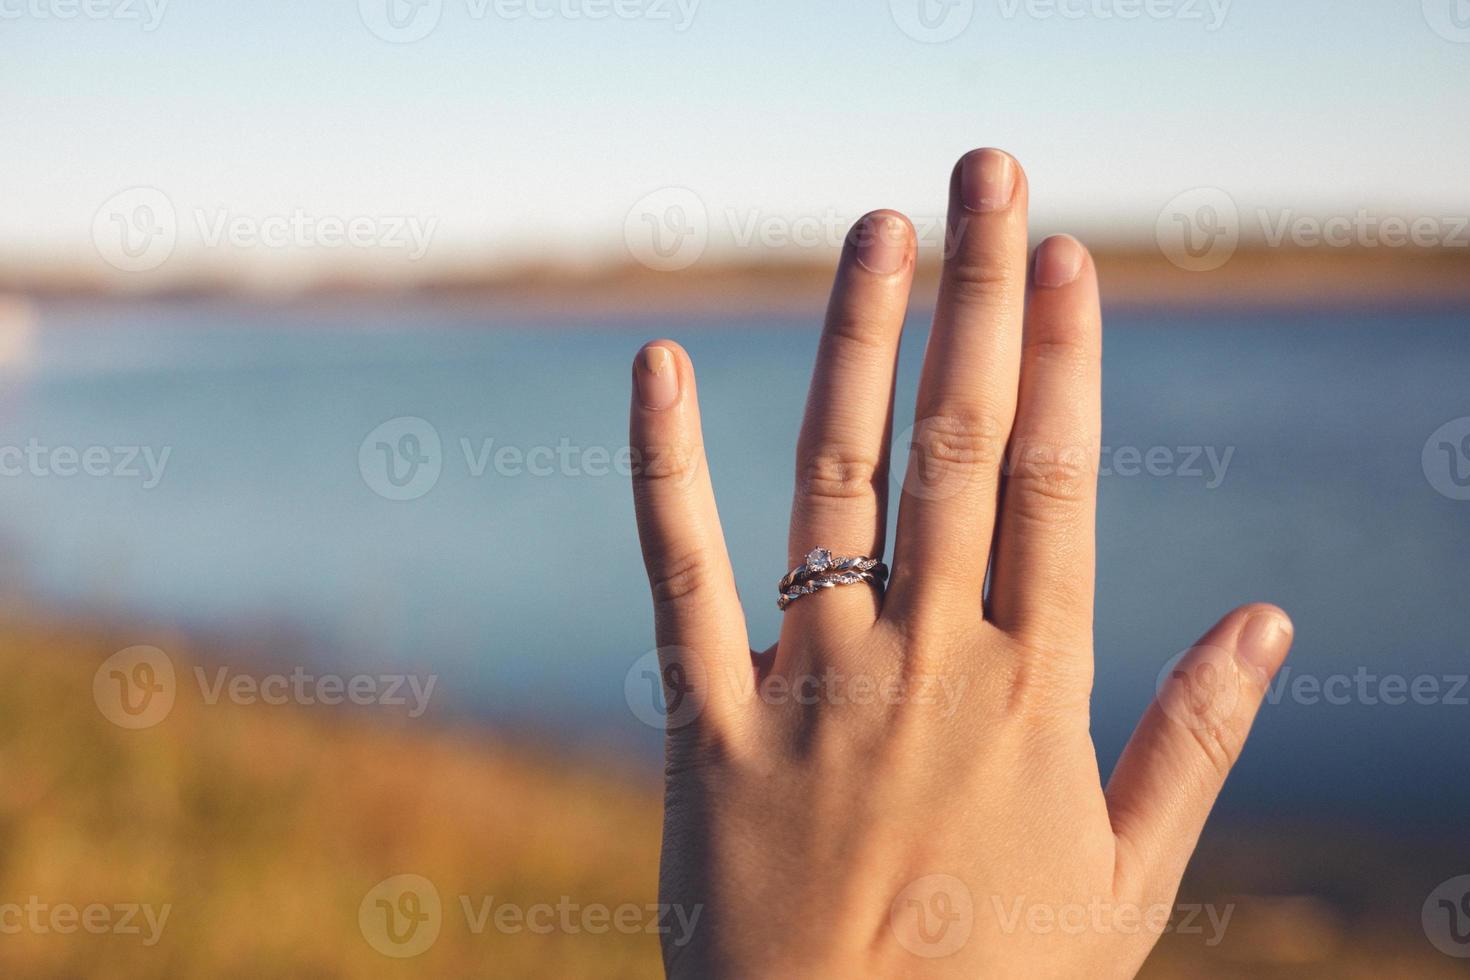 symbole de l'amour bien en vue sur la main de la jeune femme. rivière et herbes d'automne en arrière-plan. ciel bleu ensoleillé présent à l'horizon. photo